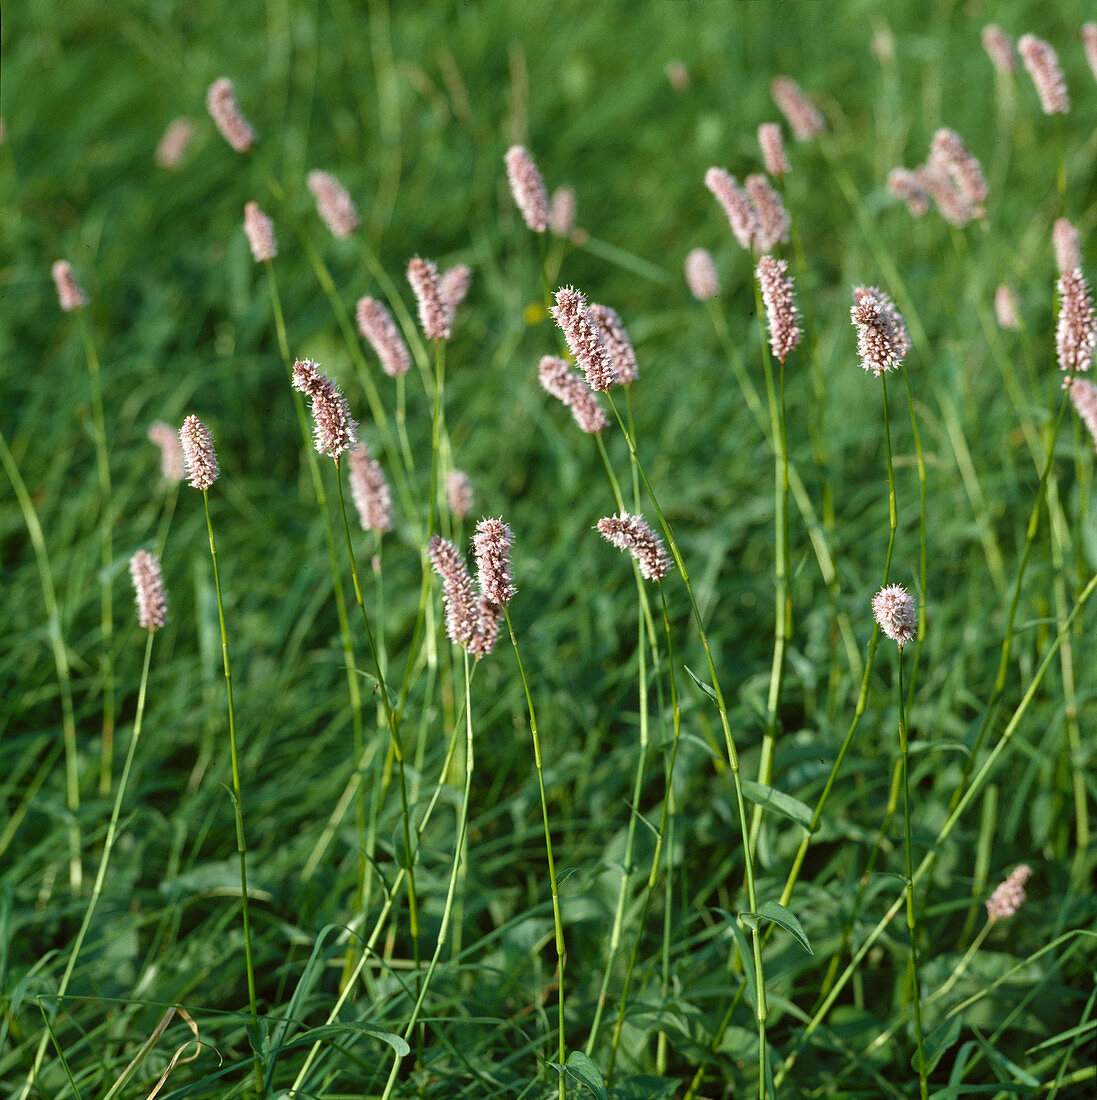 Polygonum Bistorta meadow knotweed